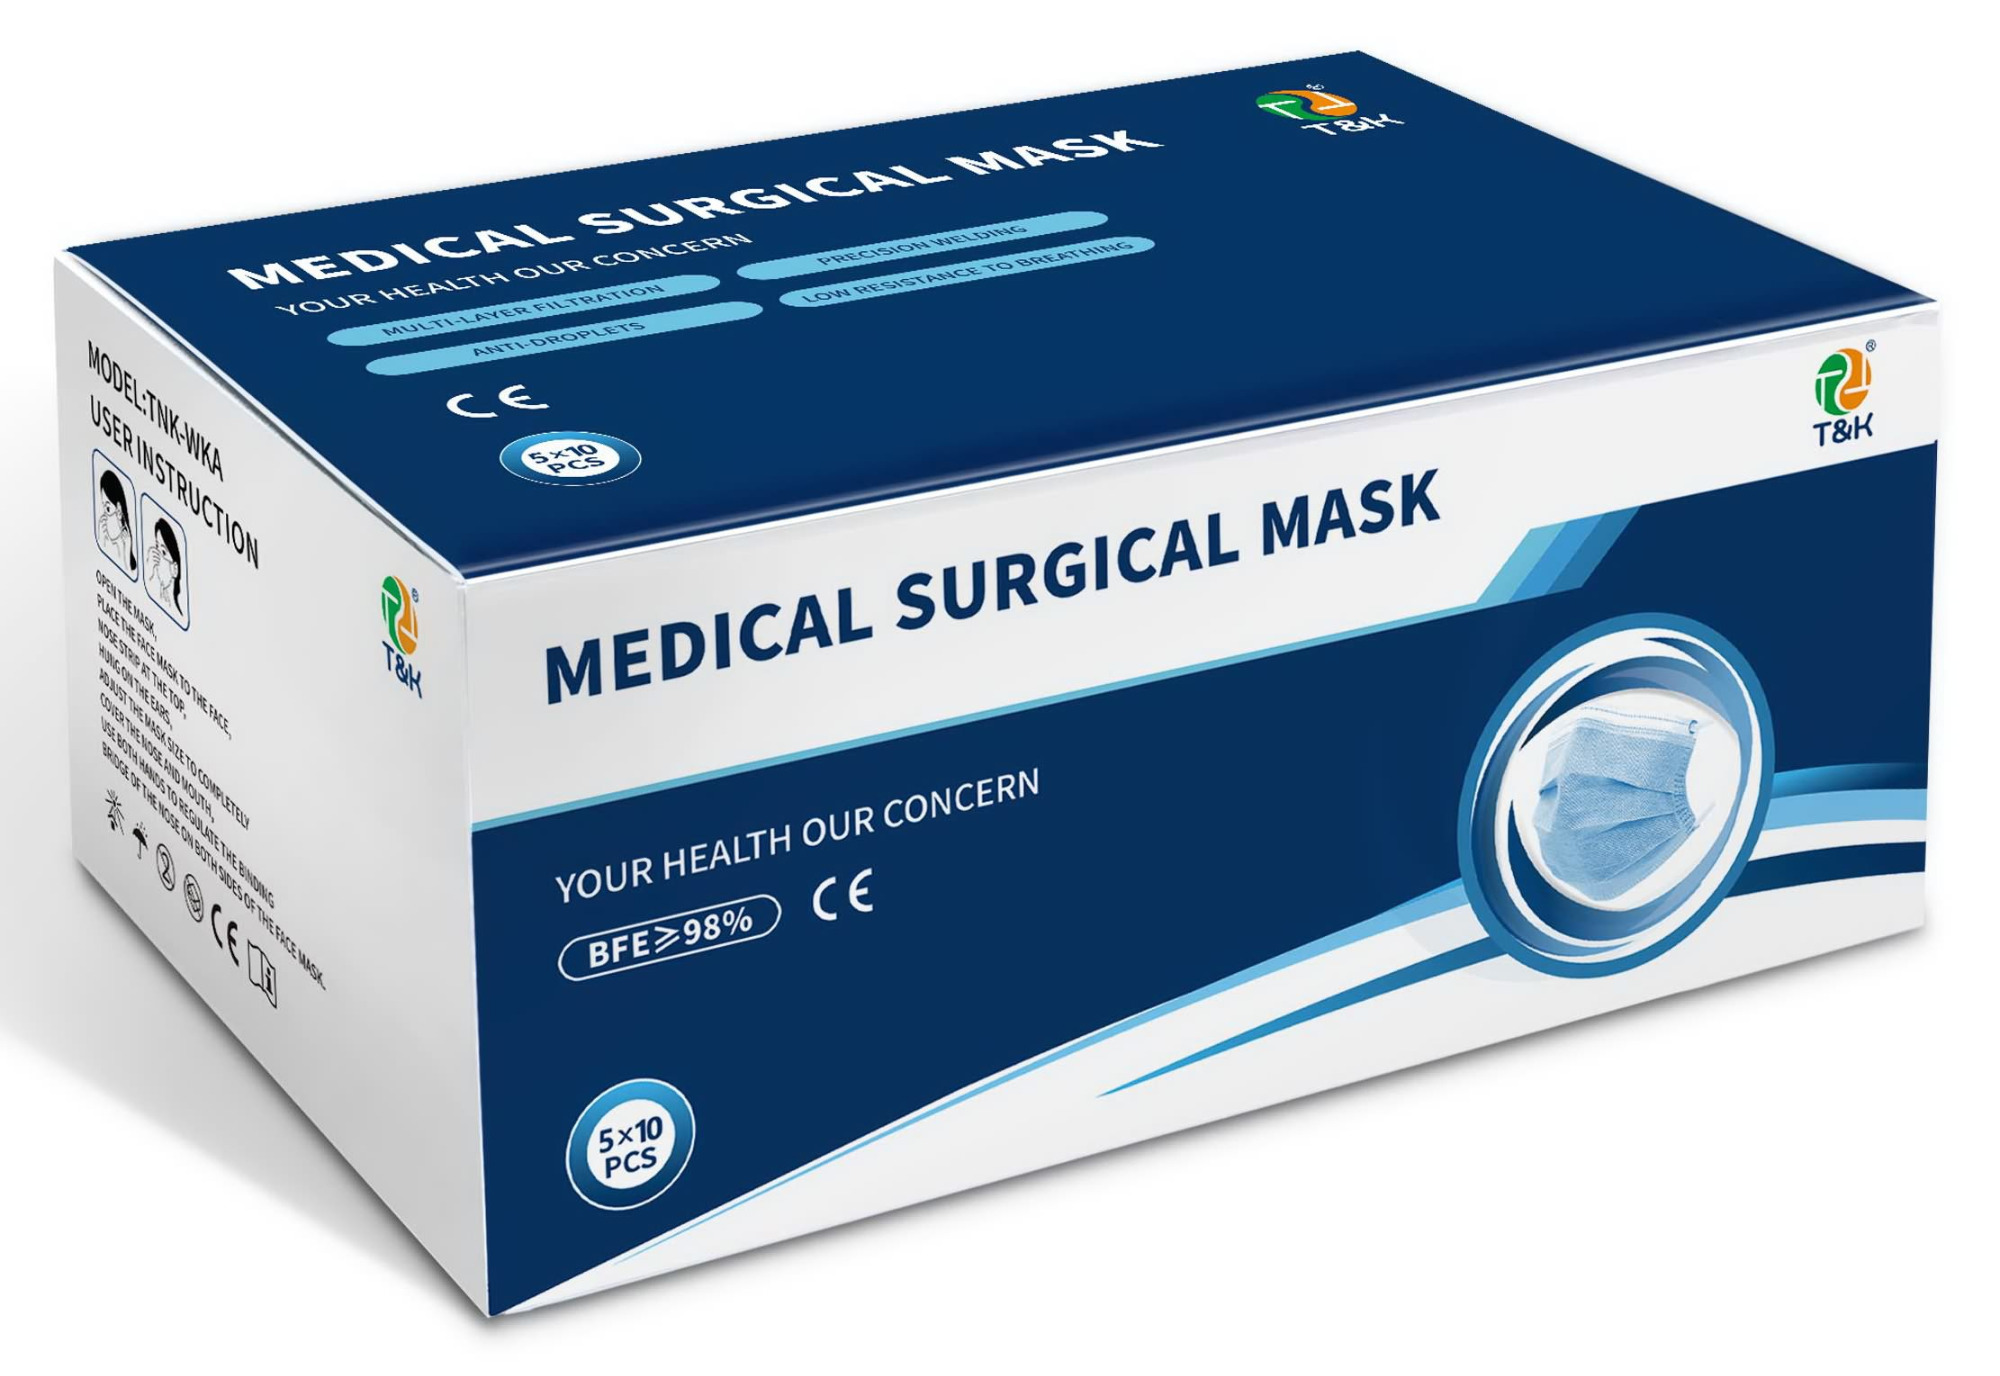 3-lagige medizinische chirurgische Maske vom Typ IIR (Ohrschlaufe)